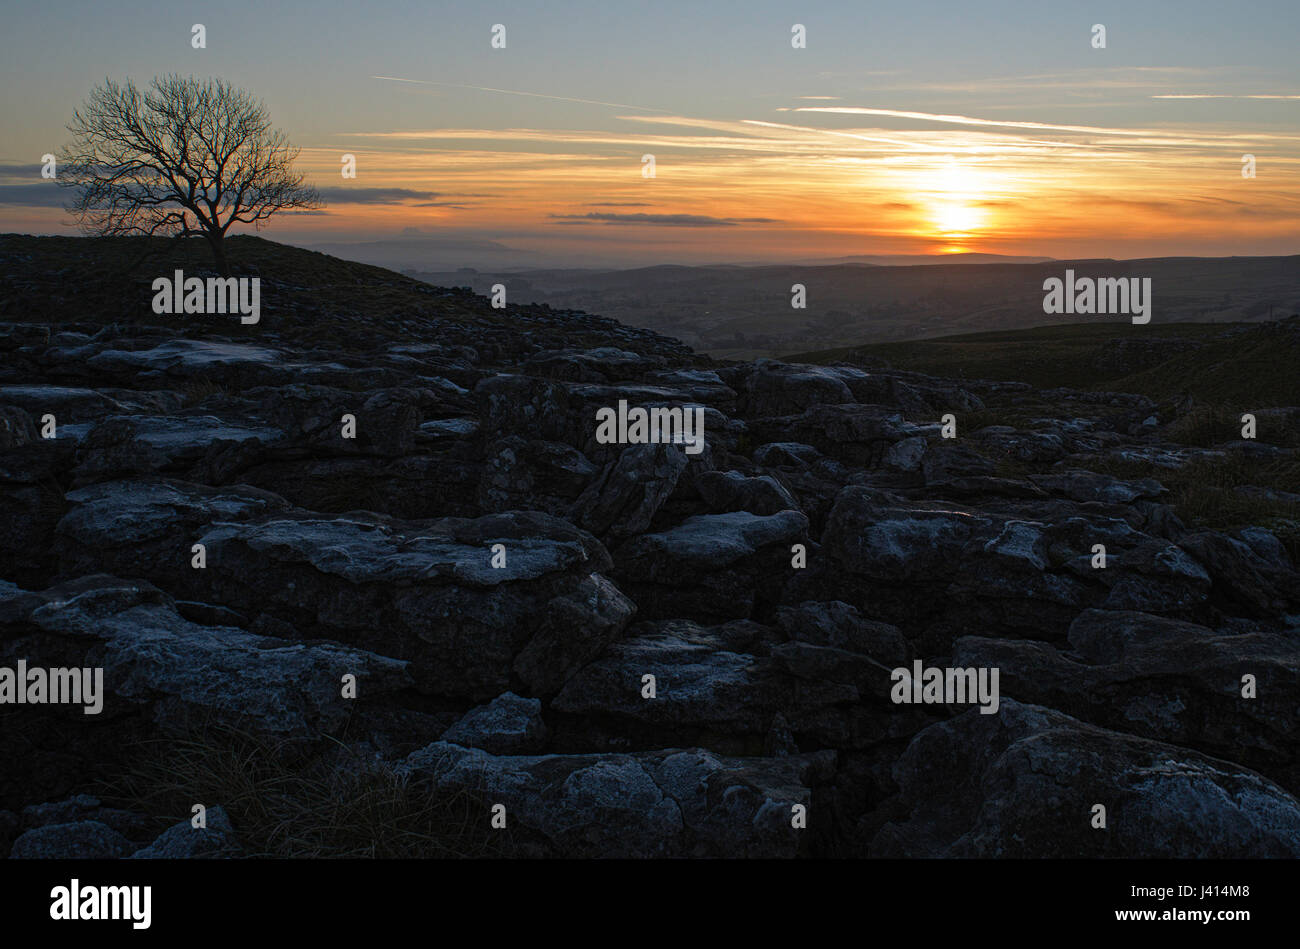 Coucher du soleil sur le calcaire au-dessus de Malham frosty, Yorkshire Dales. Frêne solitaire contre le ciel. Focus-stacked image paysage. Banque D'Images